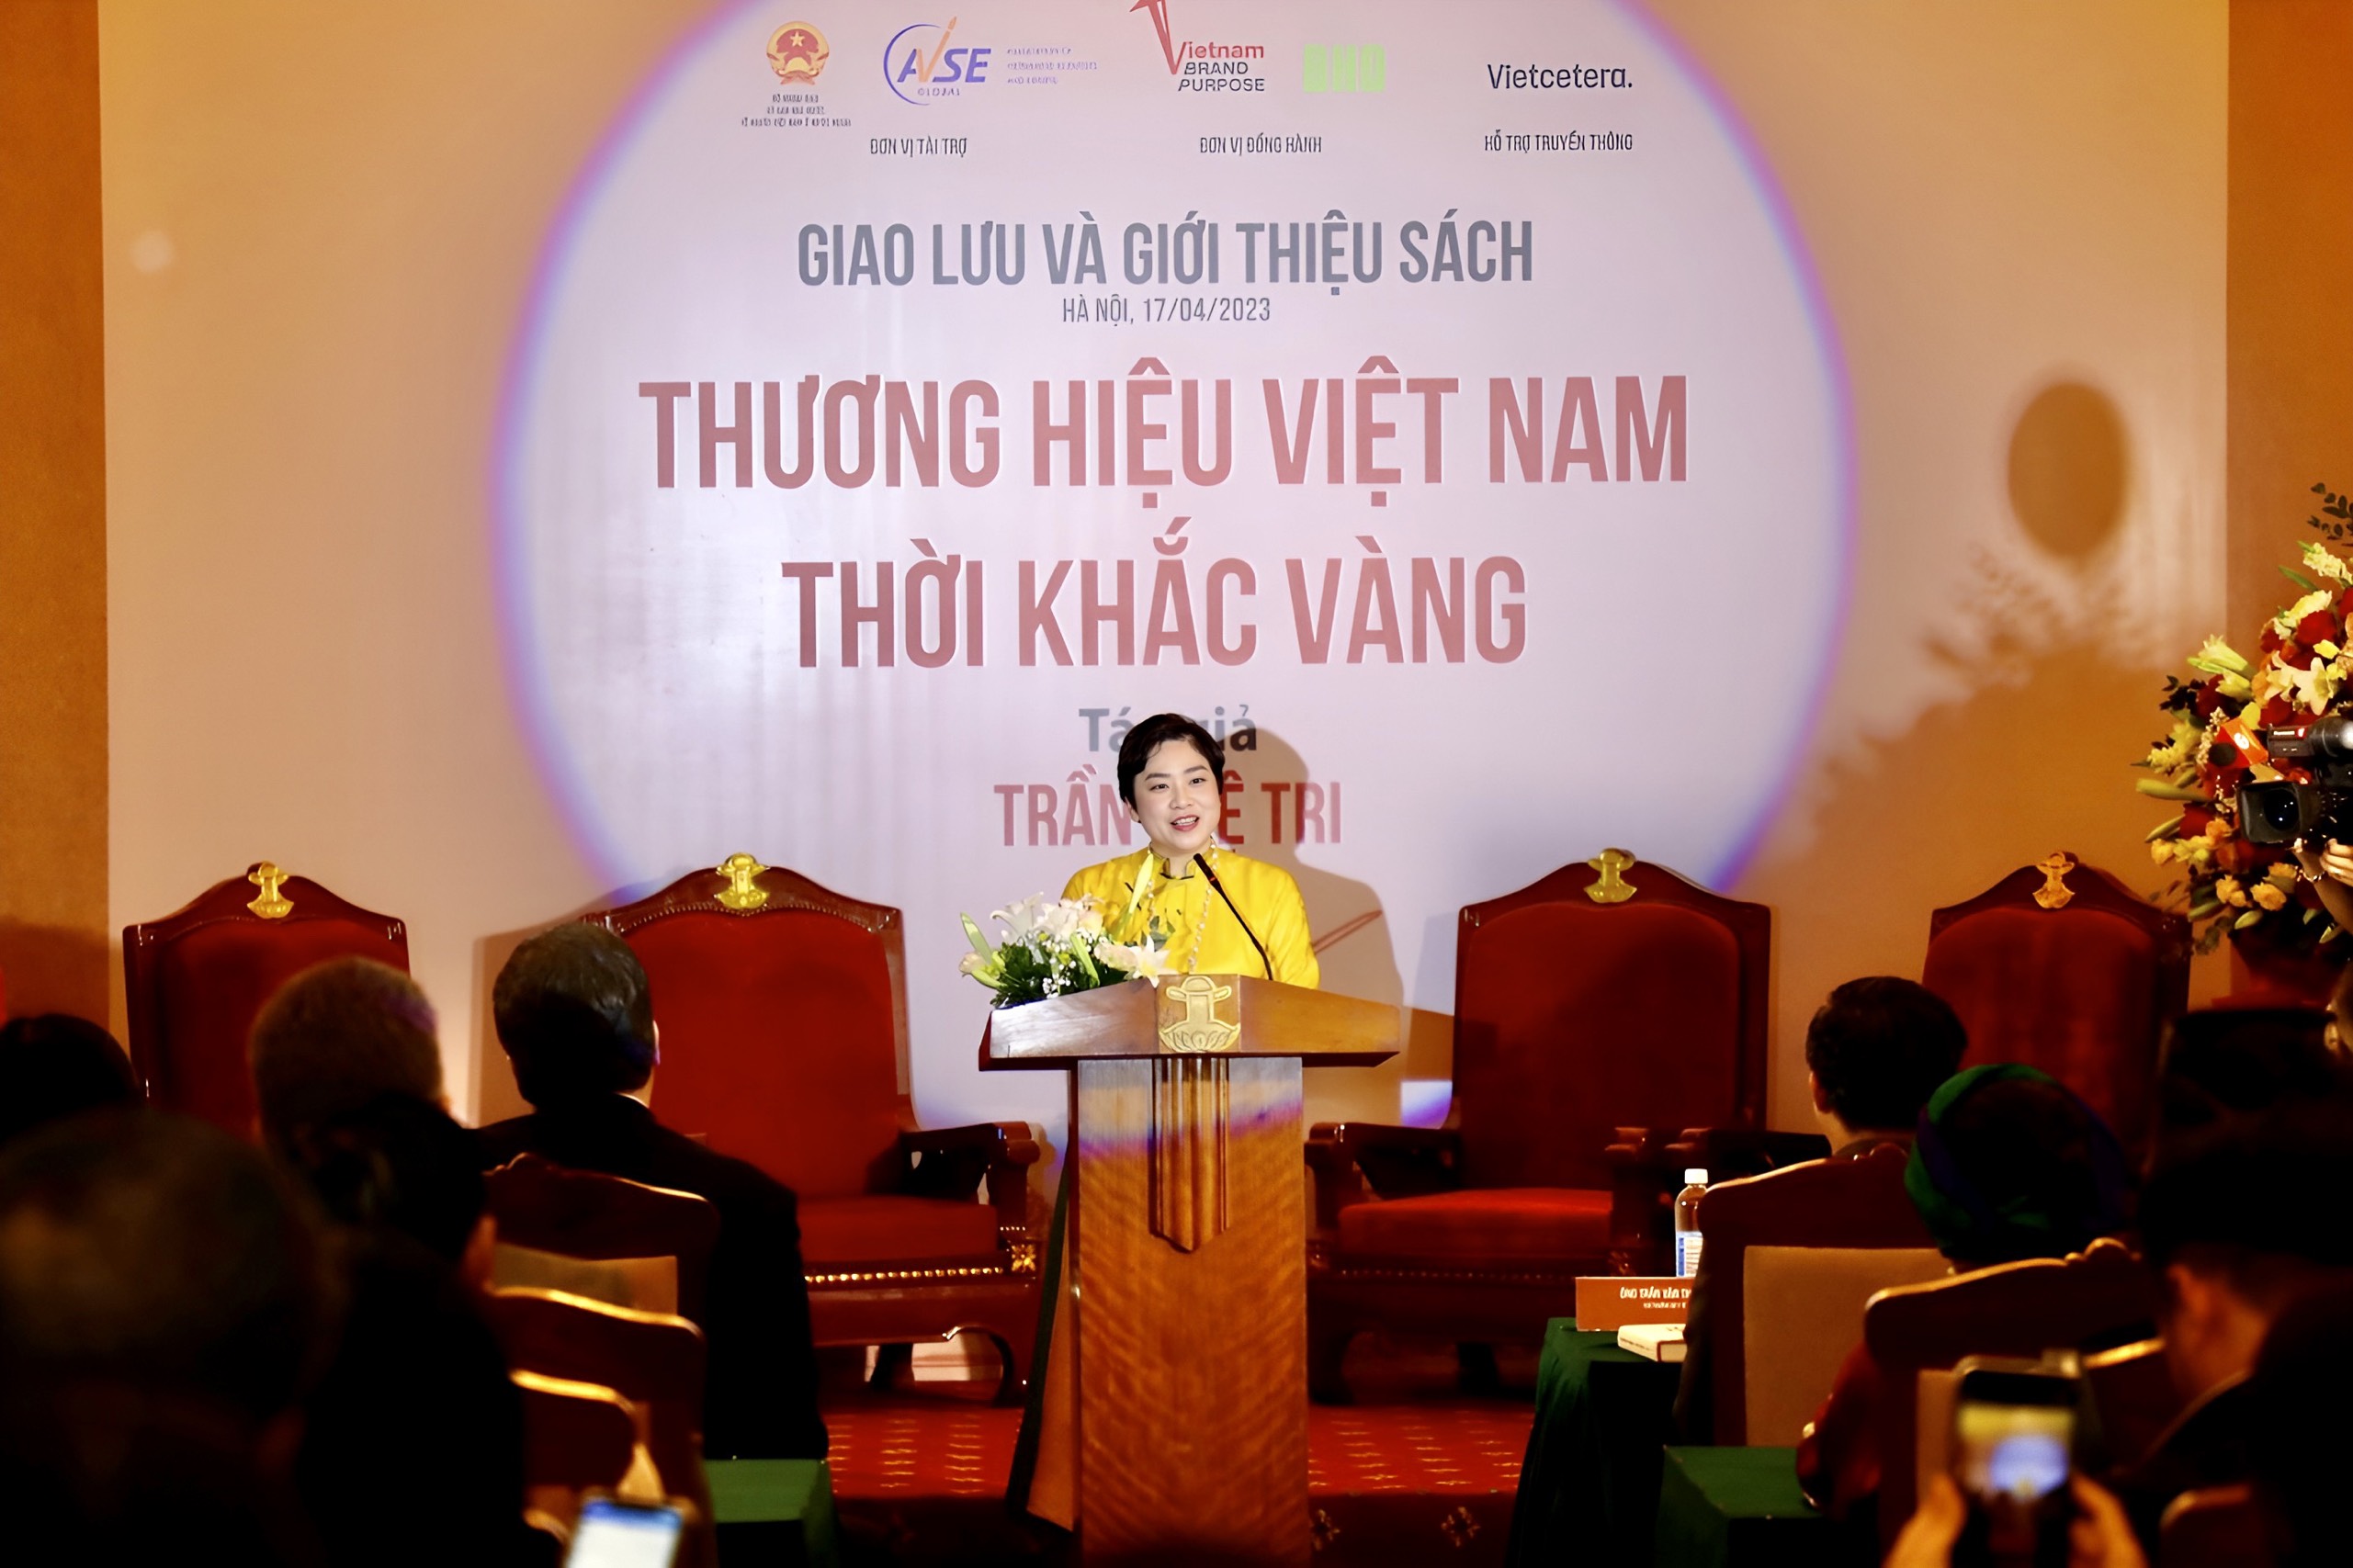 Ra mắt cuốn sách đầu tiên về thương hiệu quốc gia Việt Nam - 1